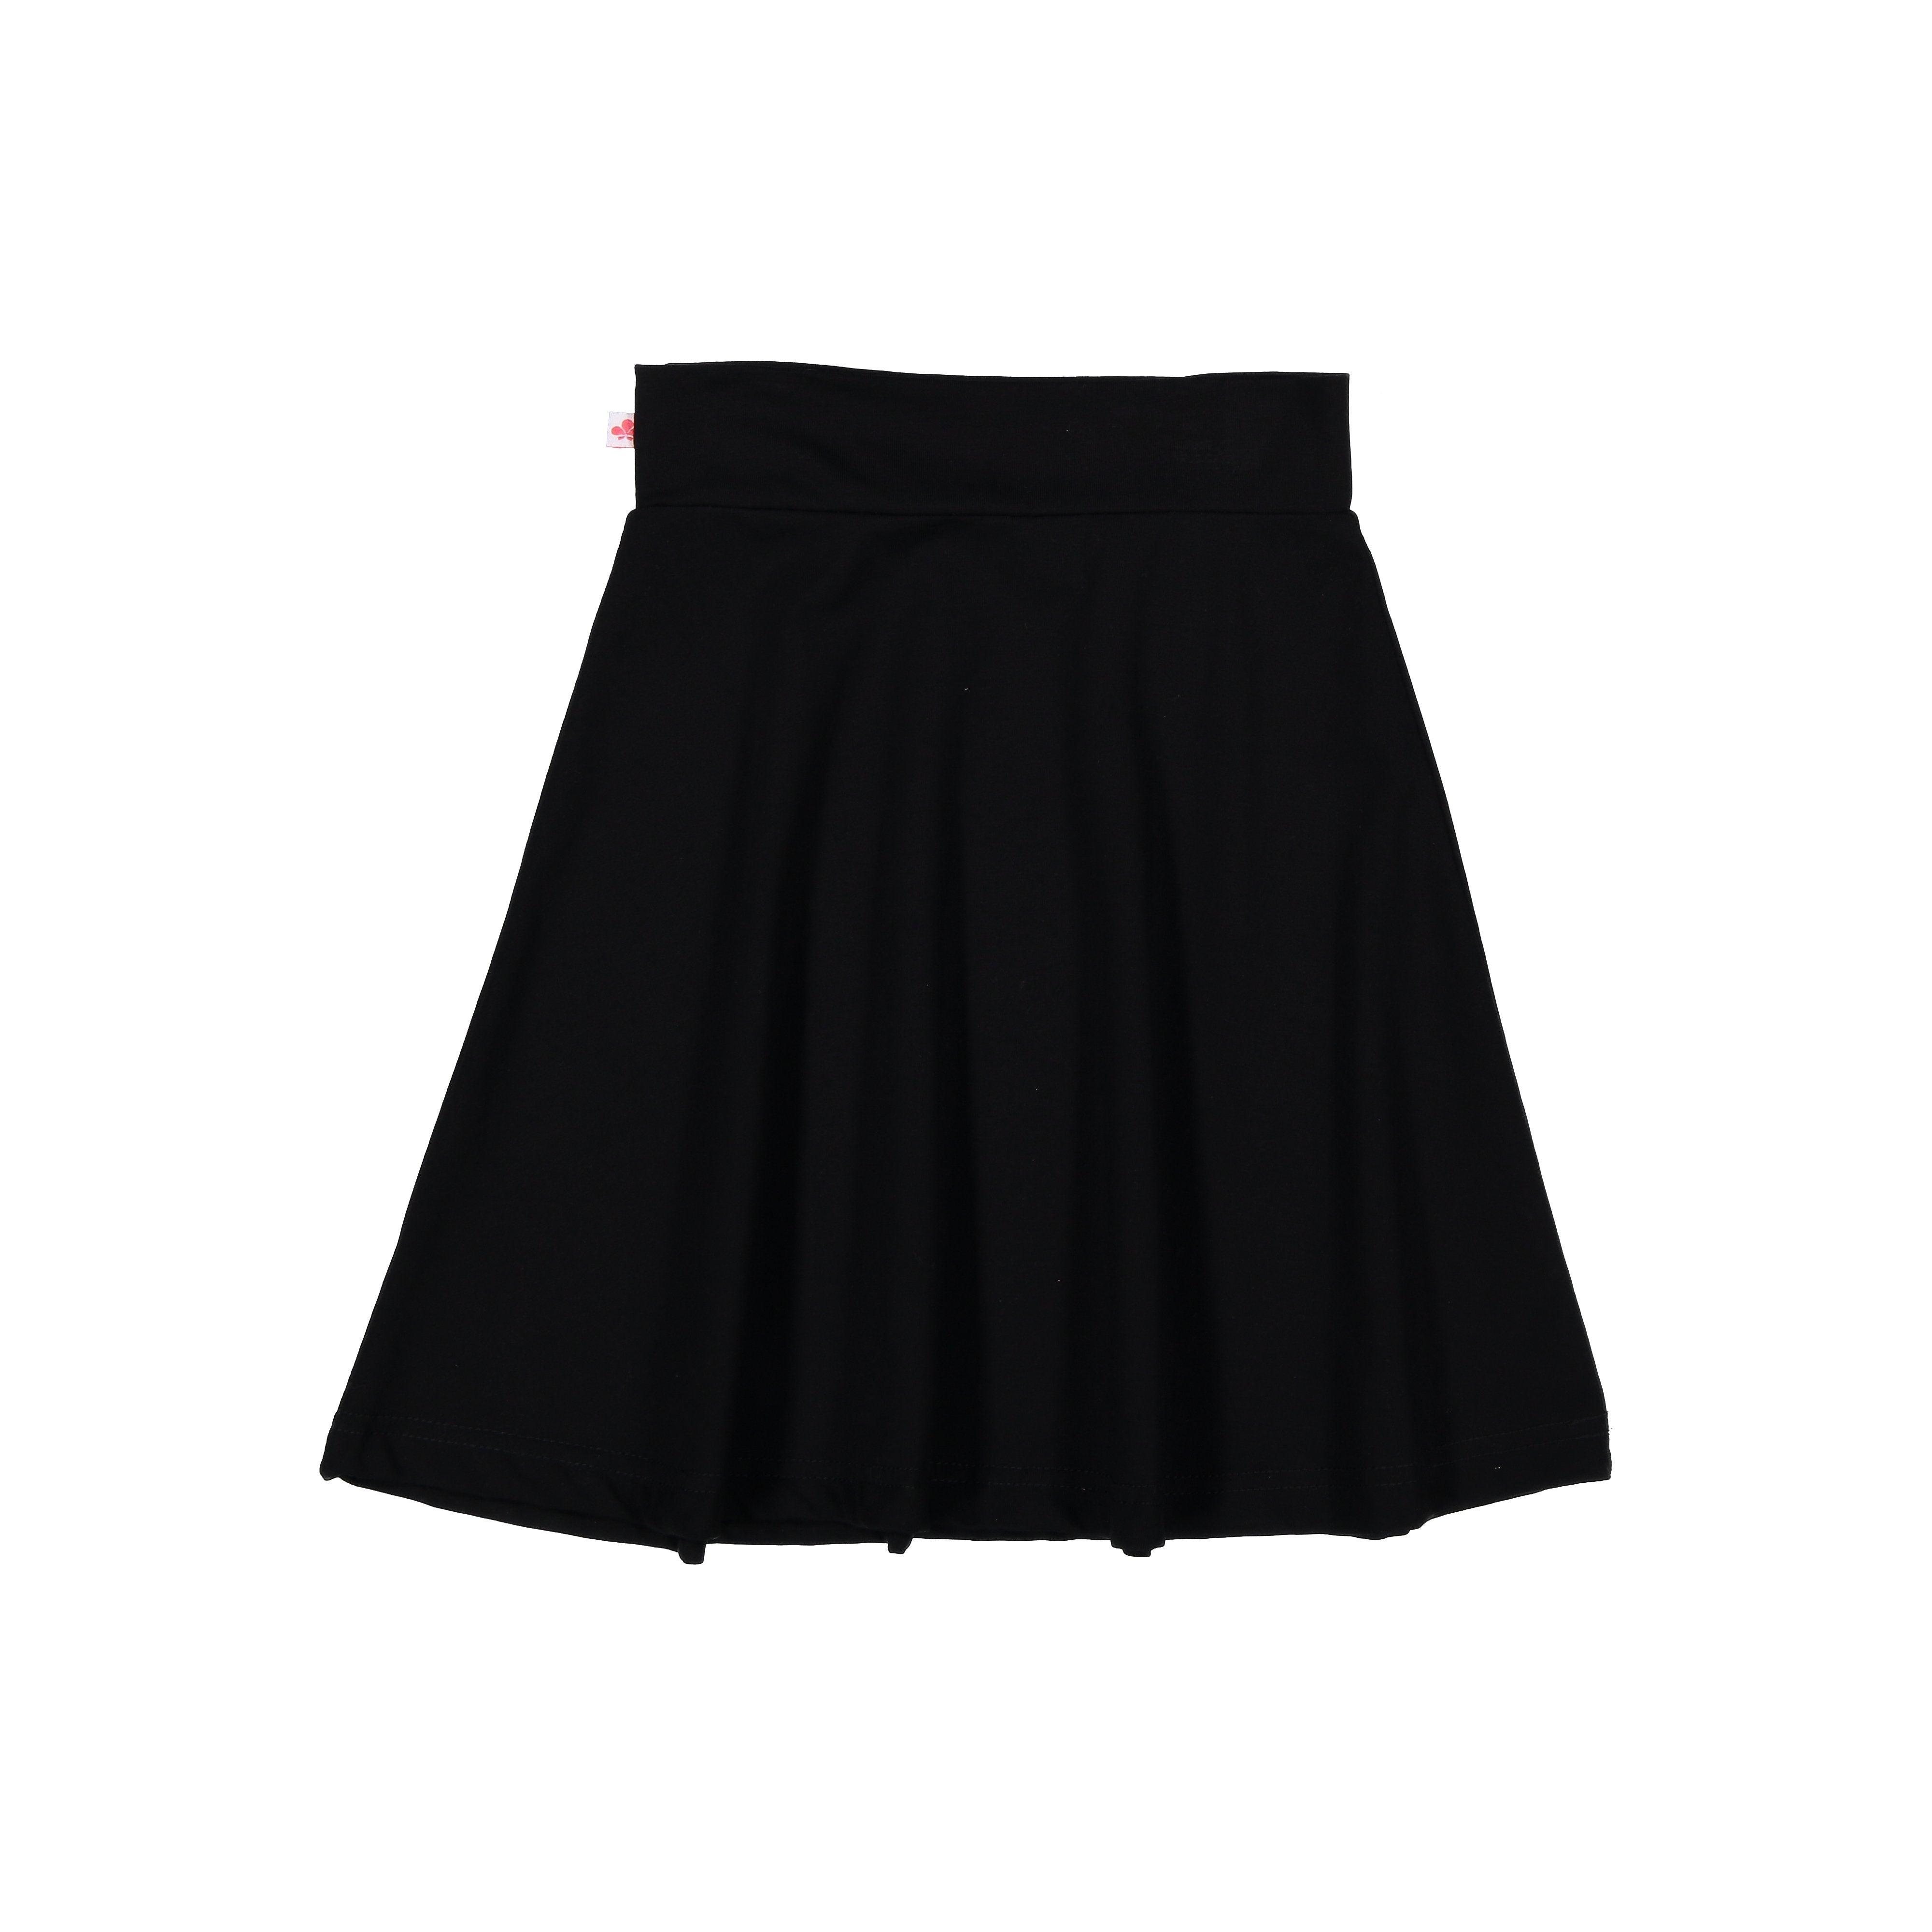 BESTSELLER Camp Skirt Classic- Black